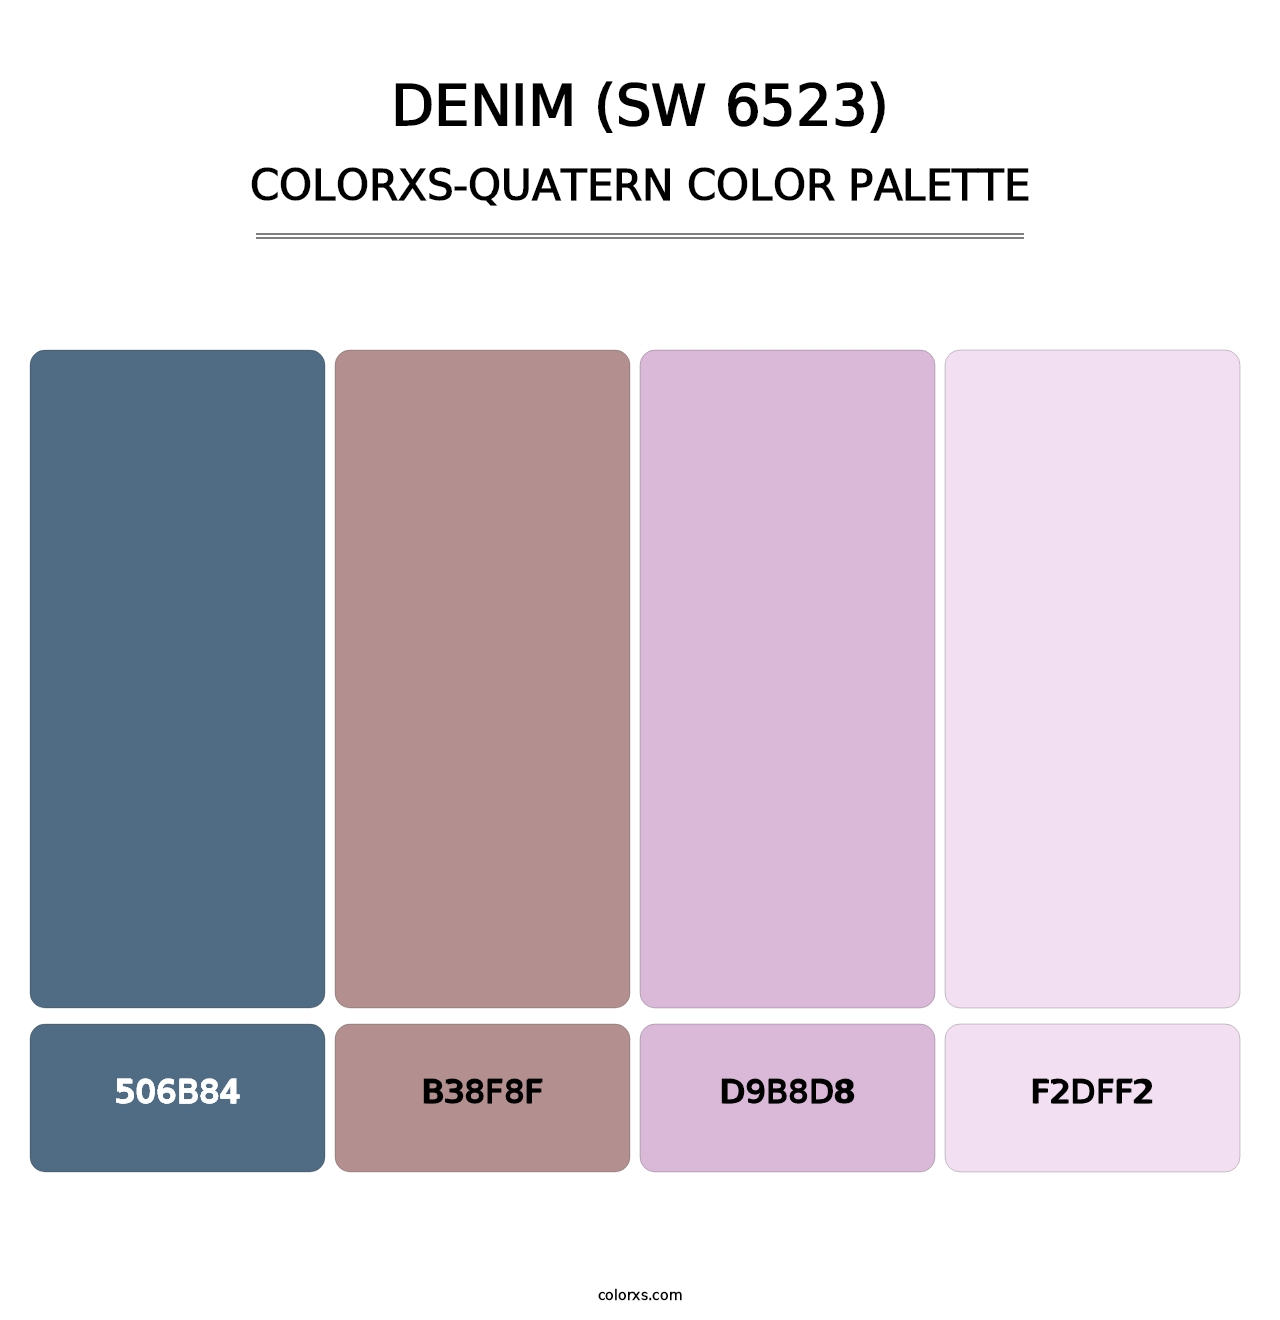 Denim (SW 6523) - Colorxs Quatern Palette